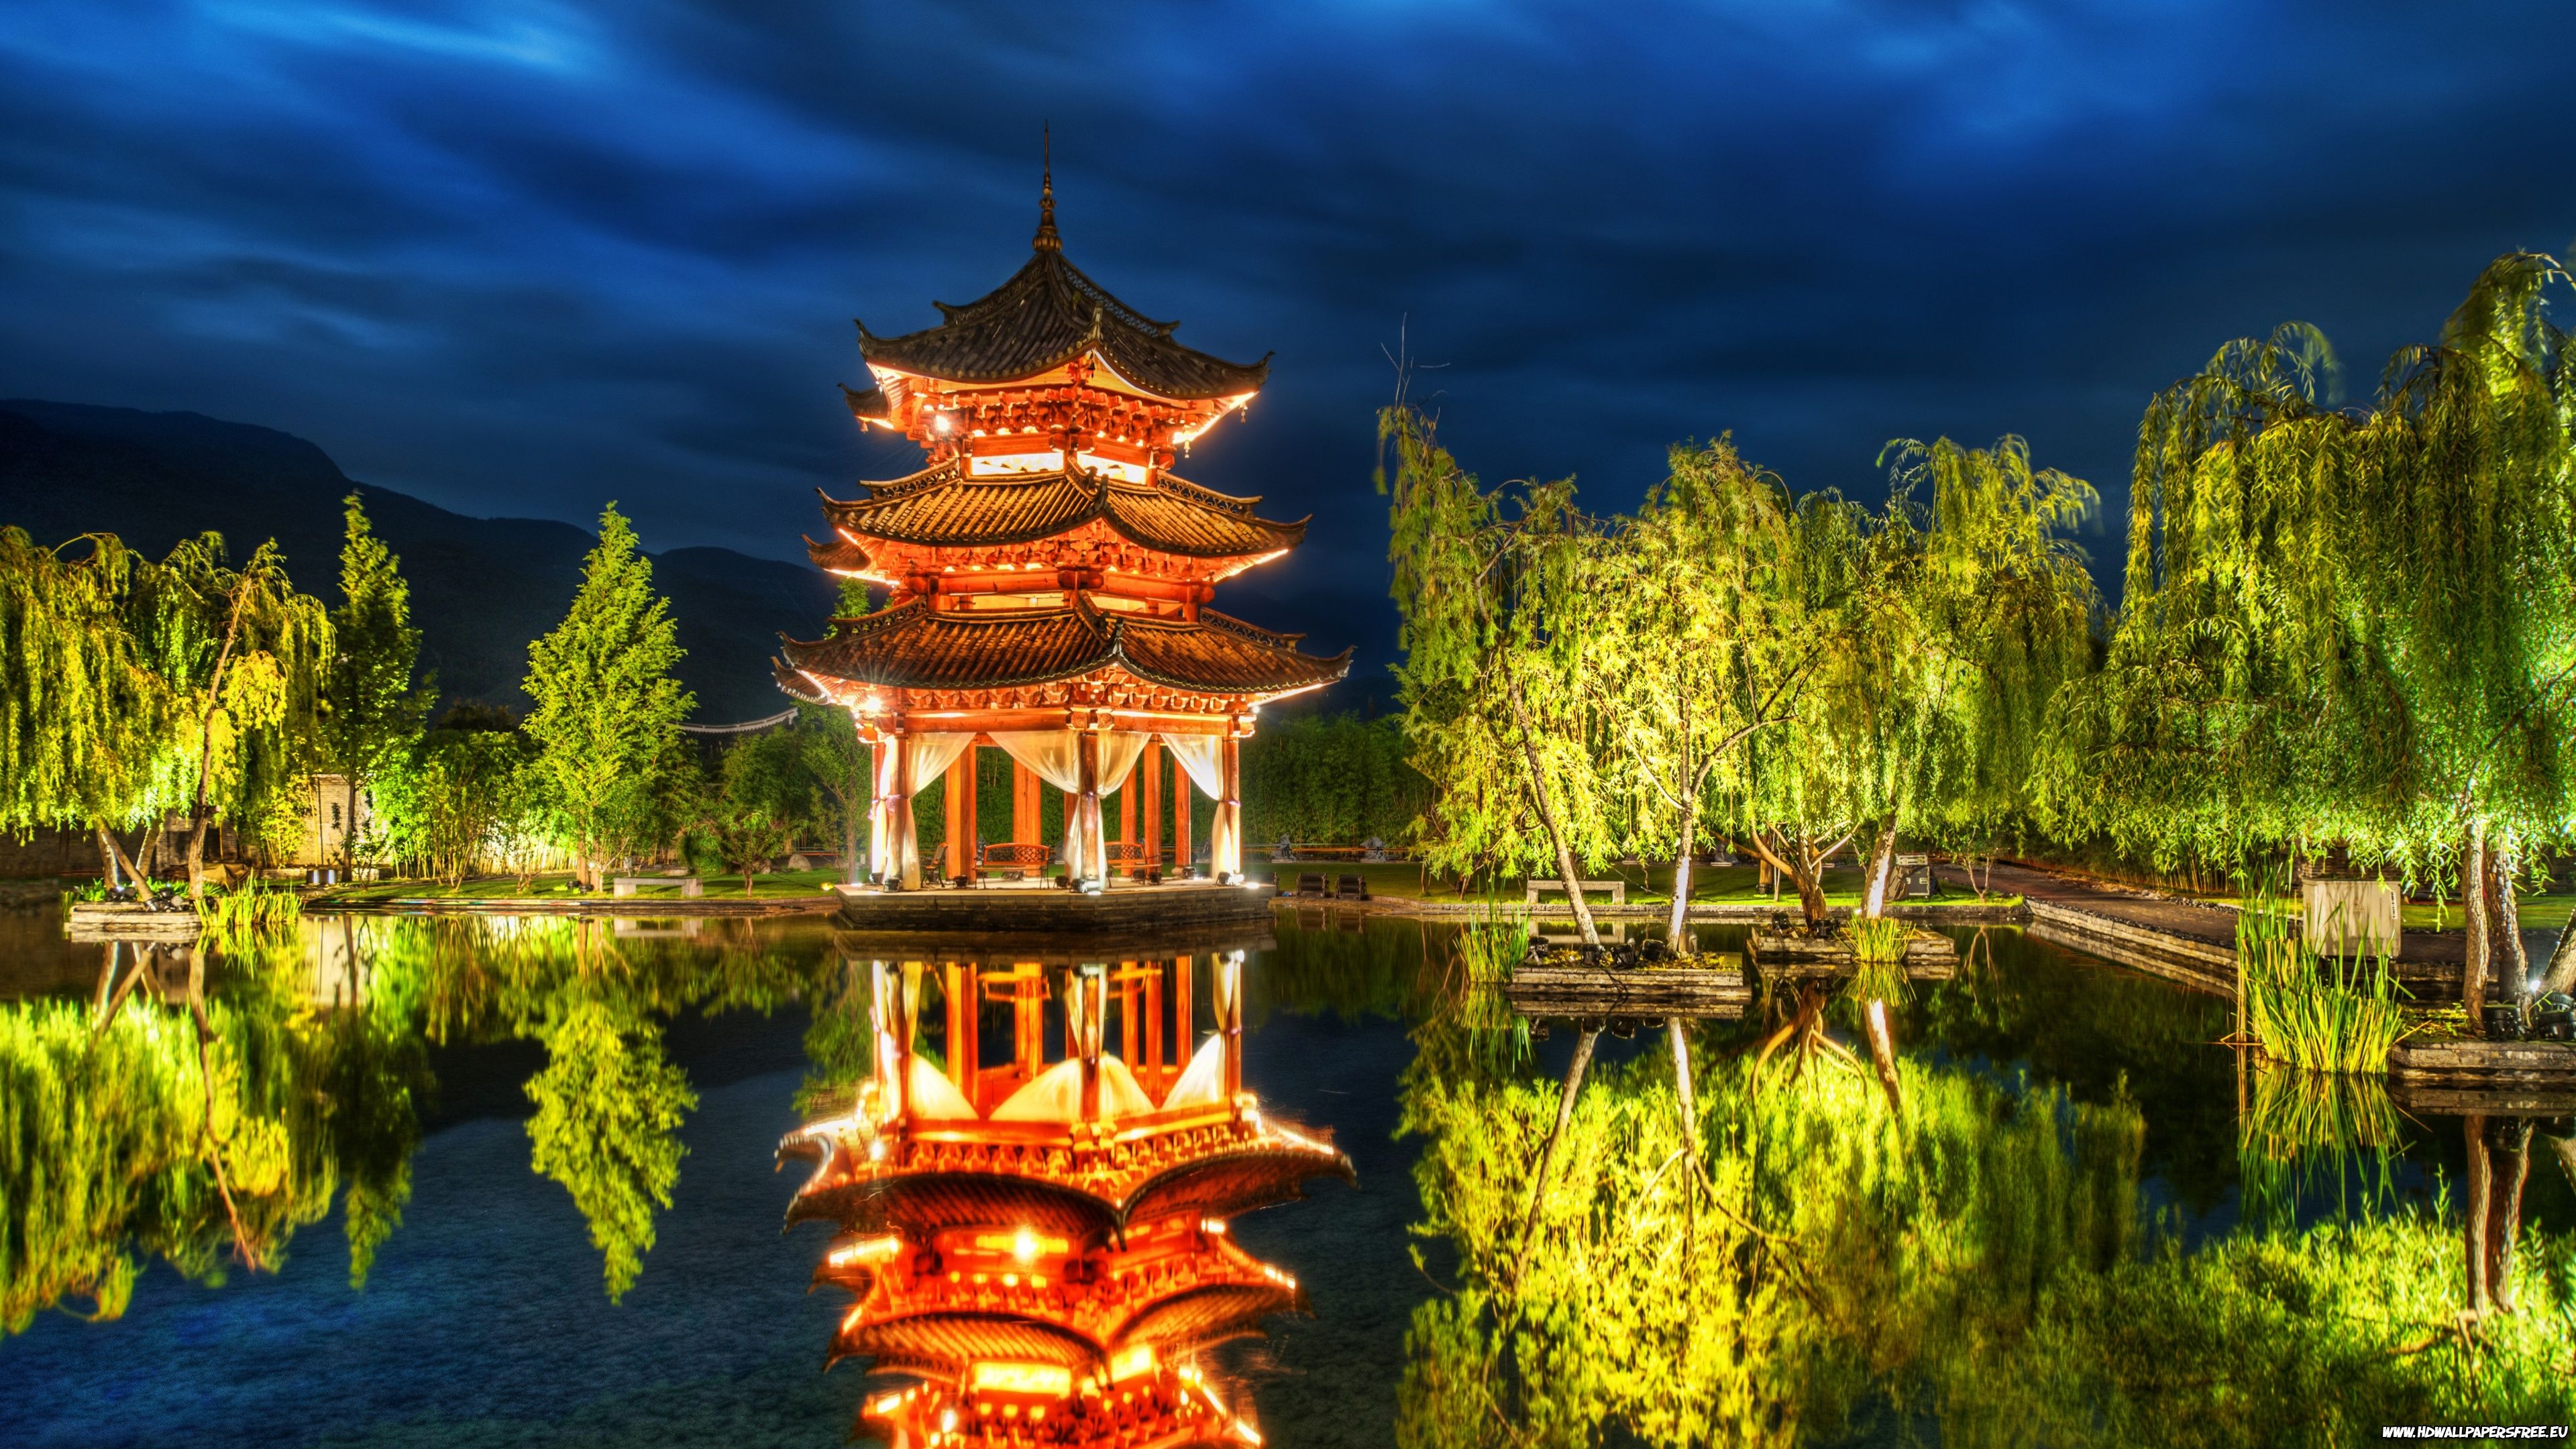 aplicativo de wallpaper,la nature,paysage naturel,réflexion,architecture chinoise,pagode